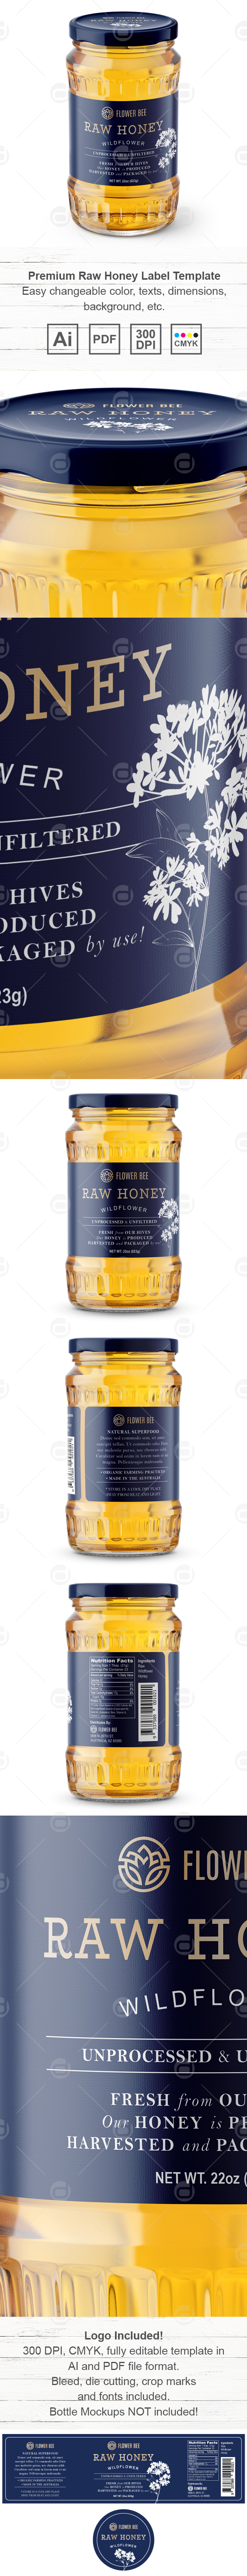 Premium Raw Honey Label Template